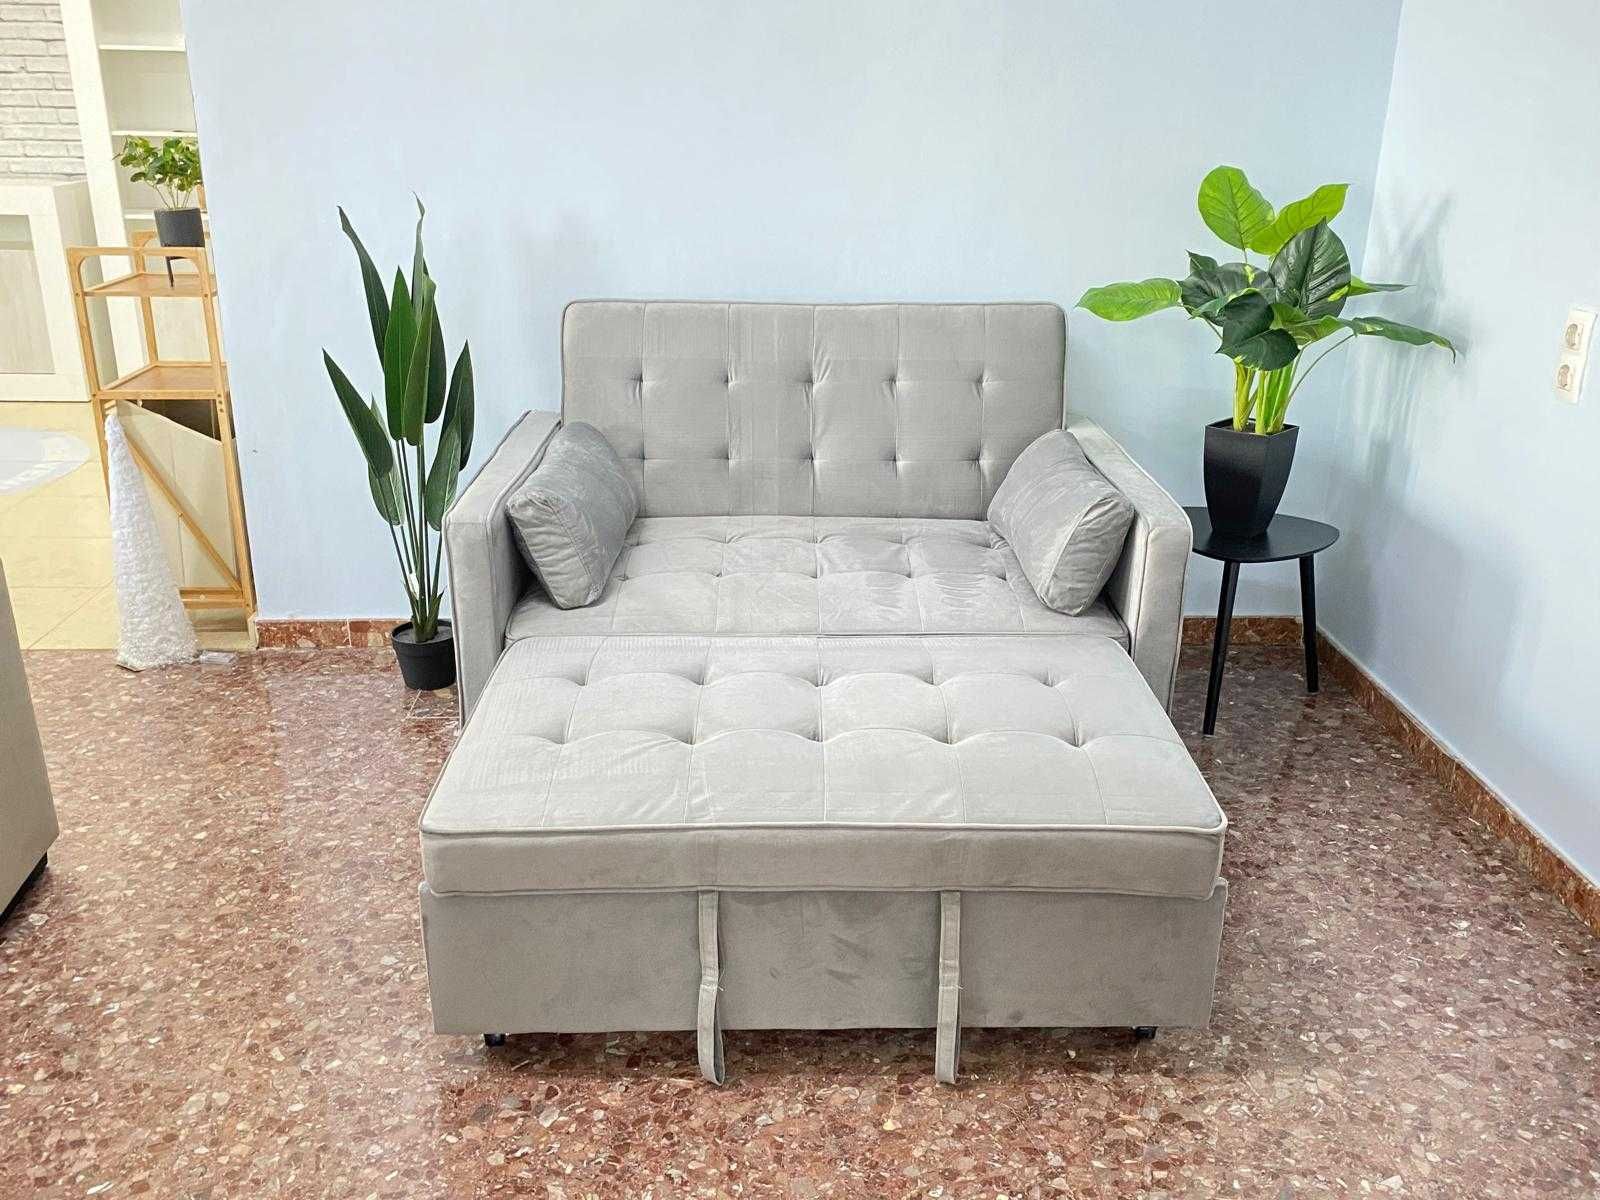 novo ! sofa cama cinza + ENVIO GRATIS !!